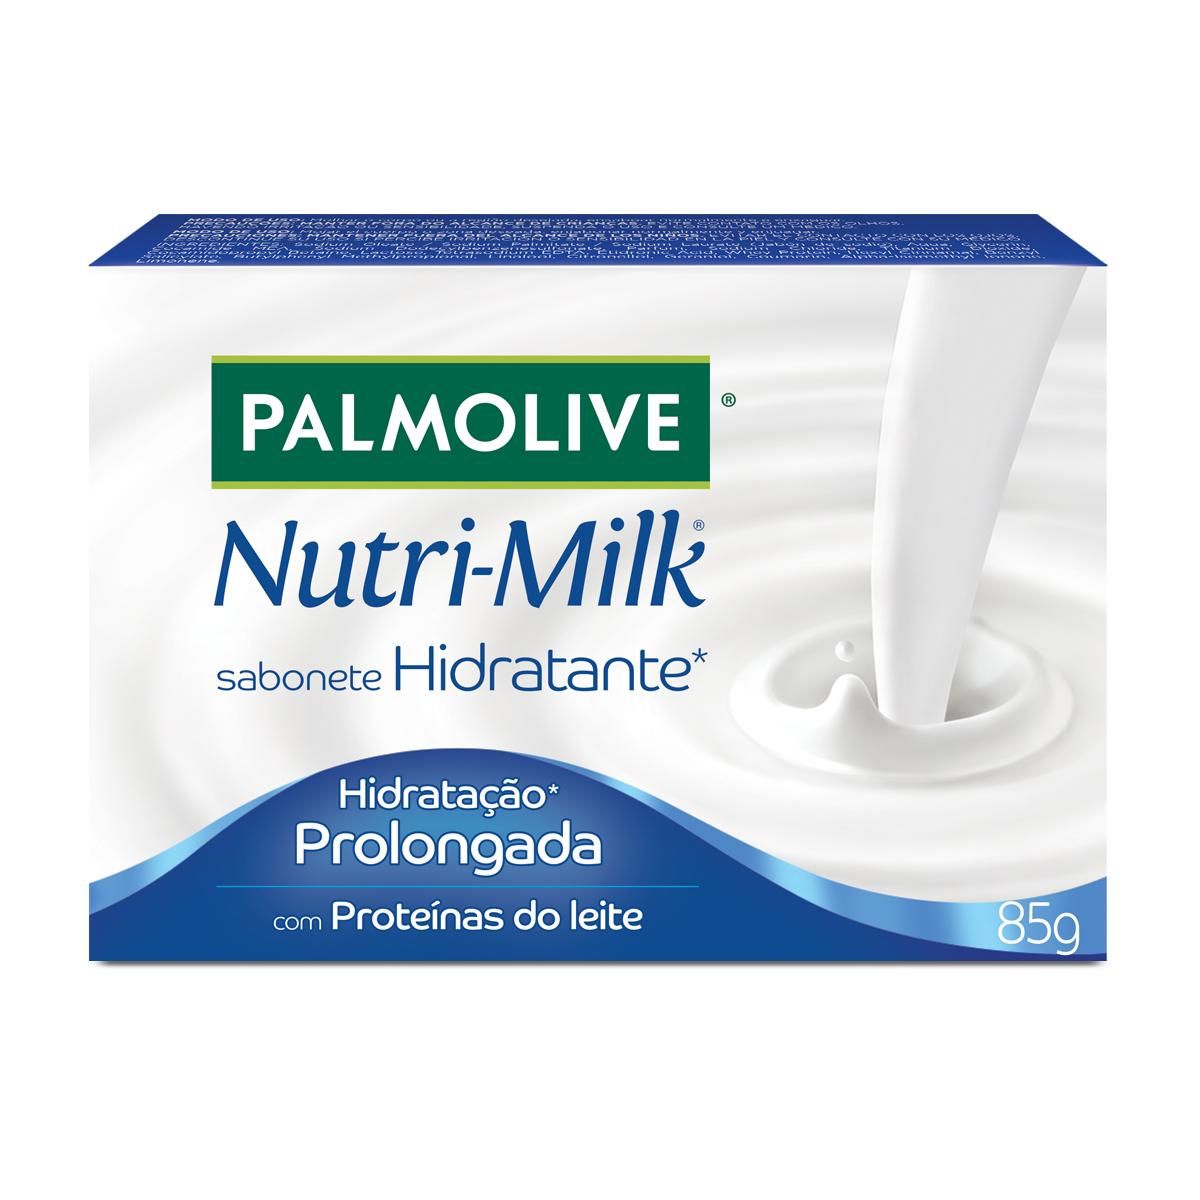 Sabonete Barra Palmolive Nutri-Milk Hidratação Prolongada 85g